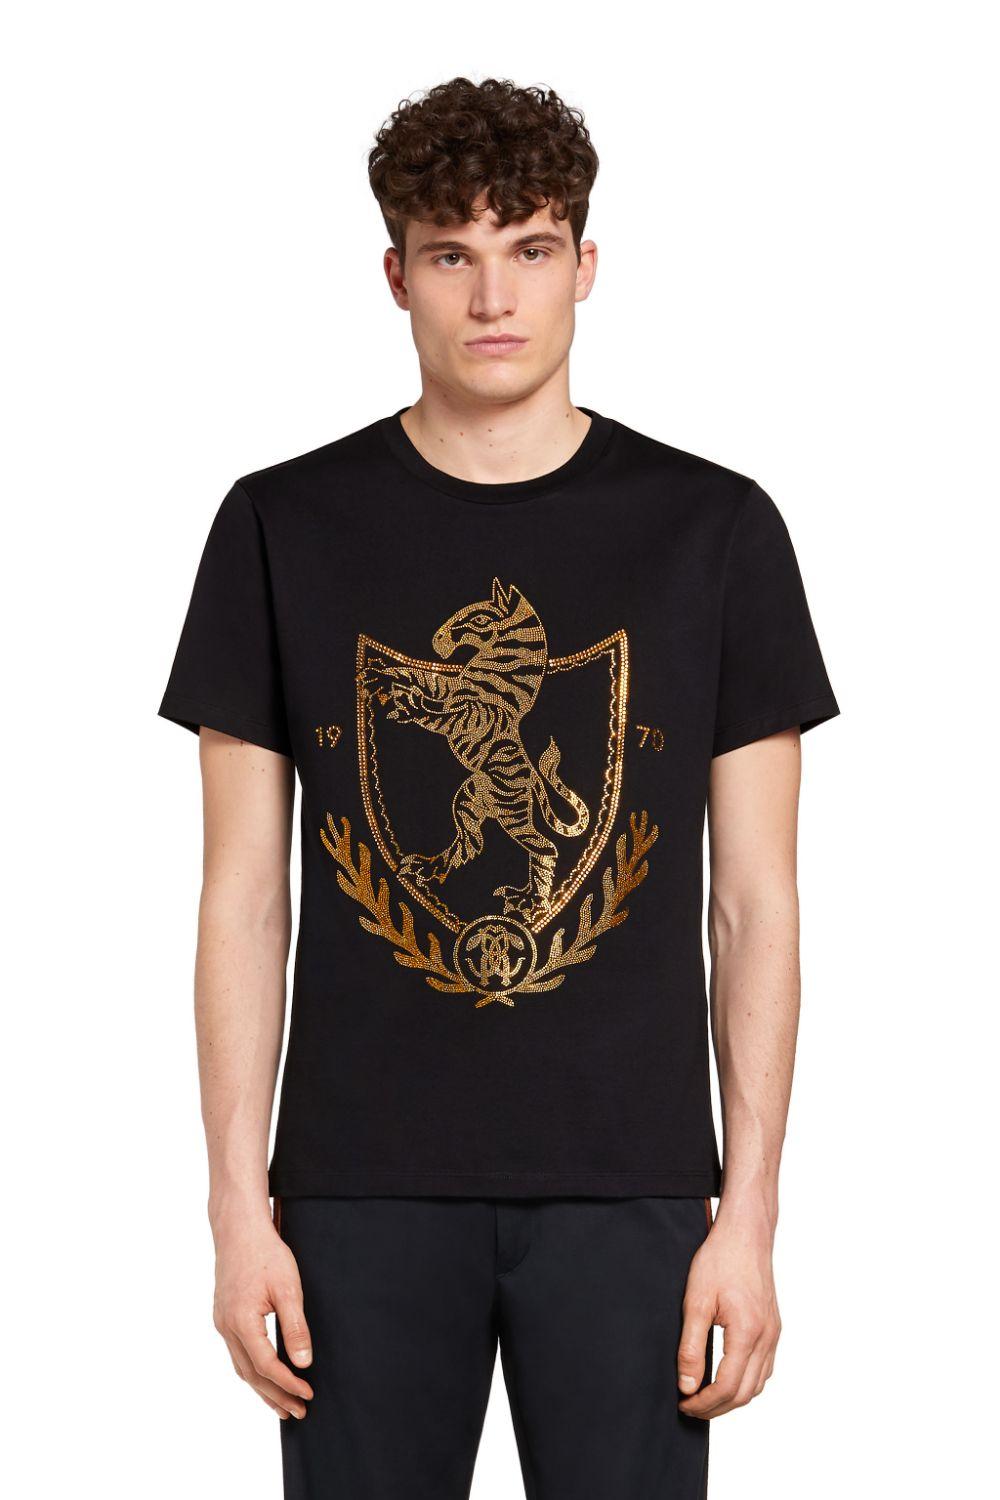 Roberto Cavalli Crystal Embellished Crest T-shirt in Black for Men - Lyst